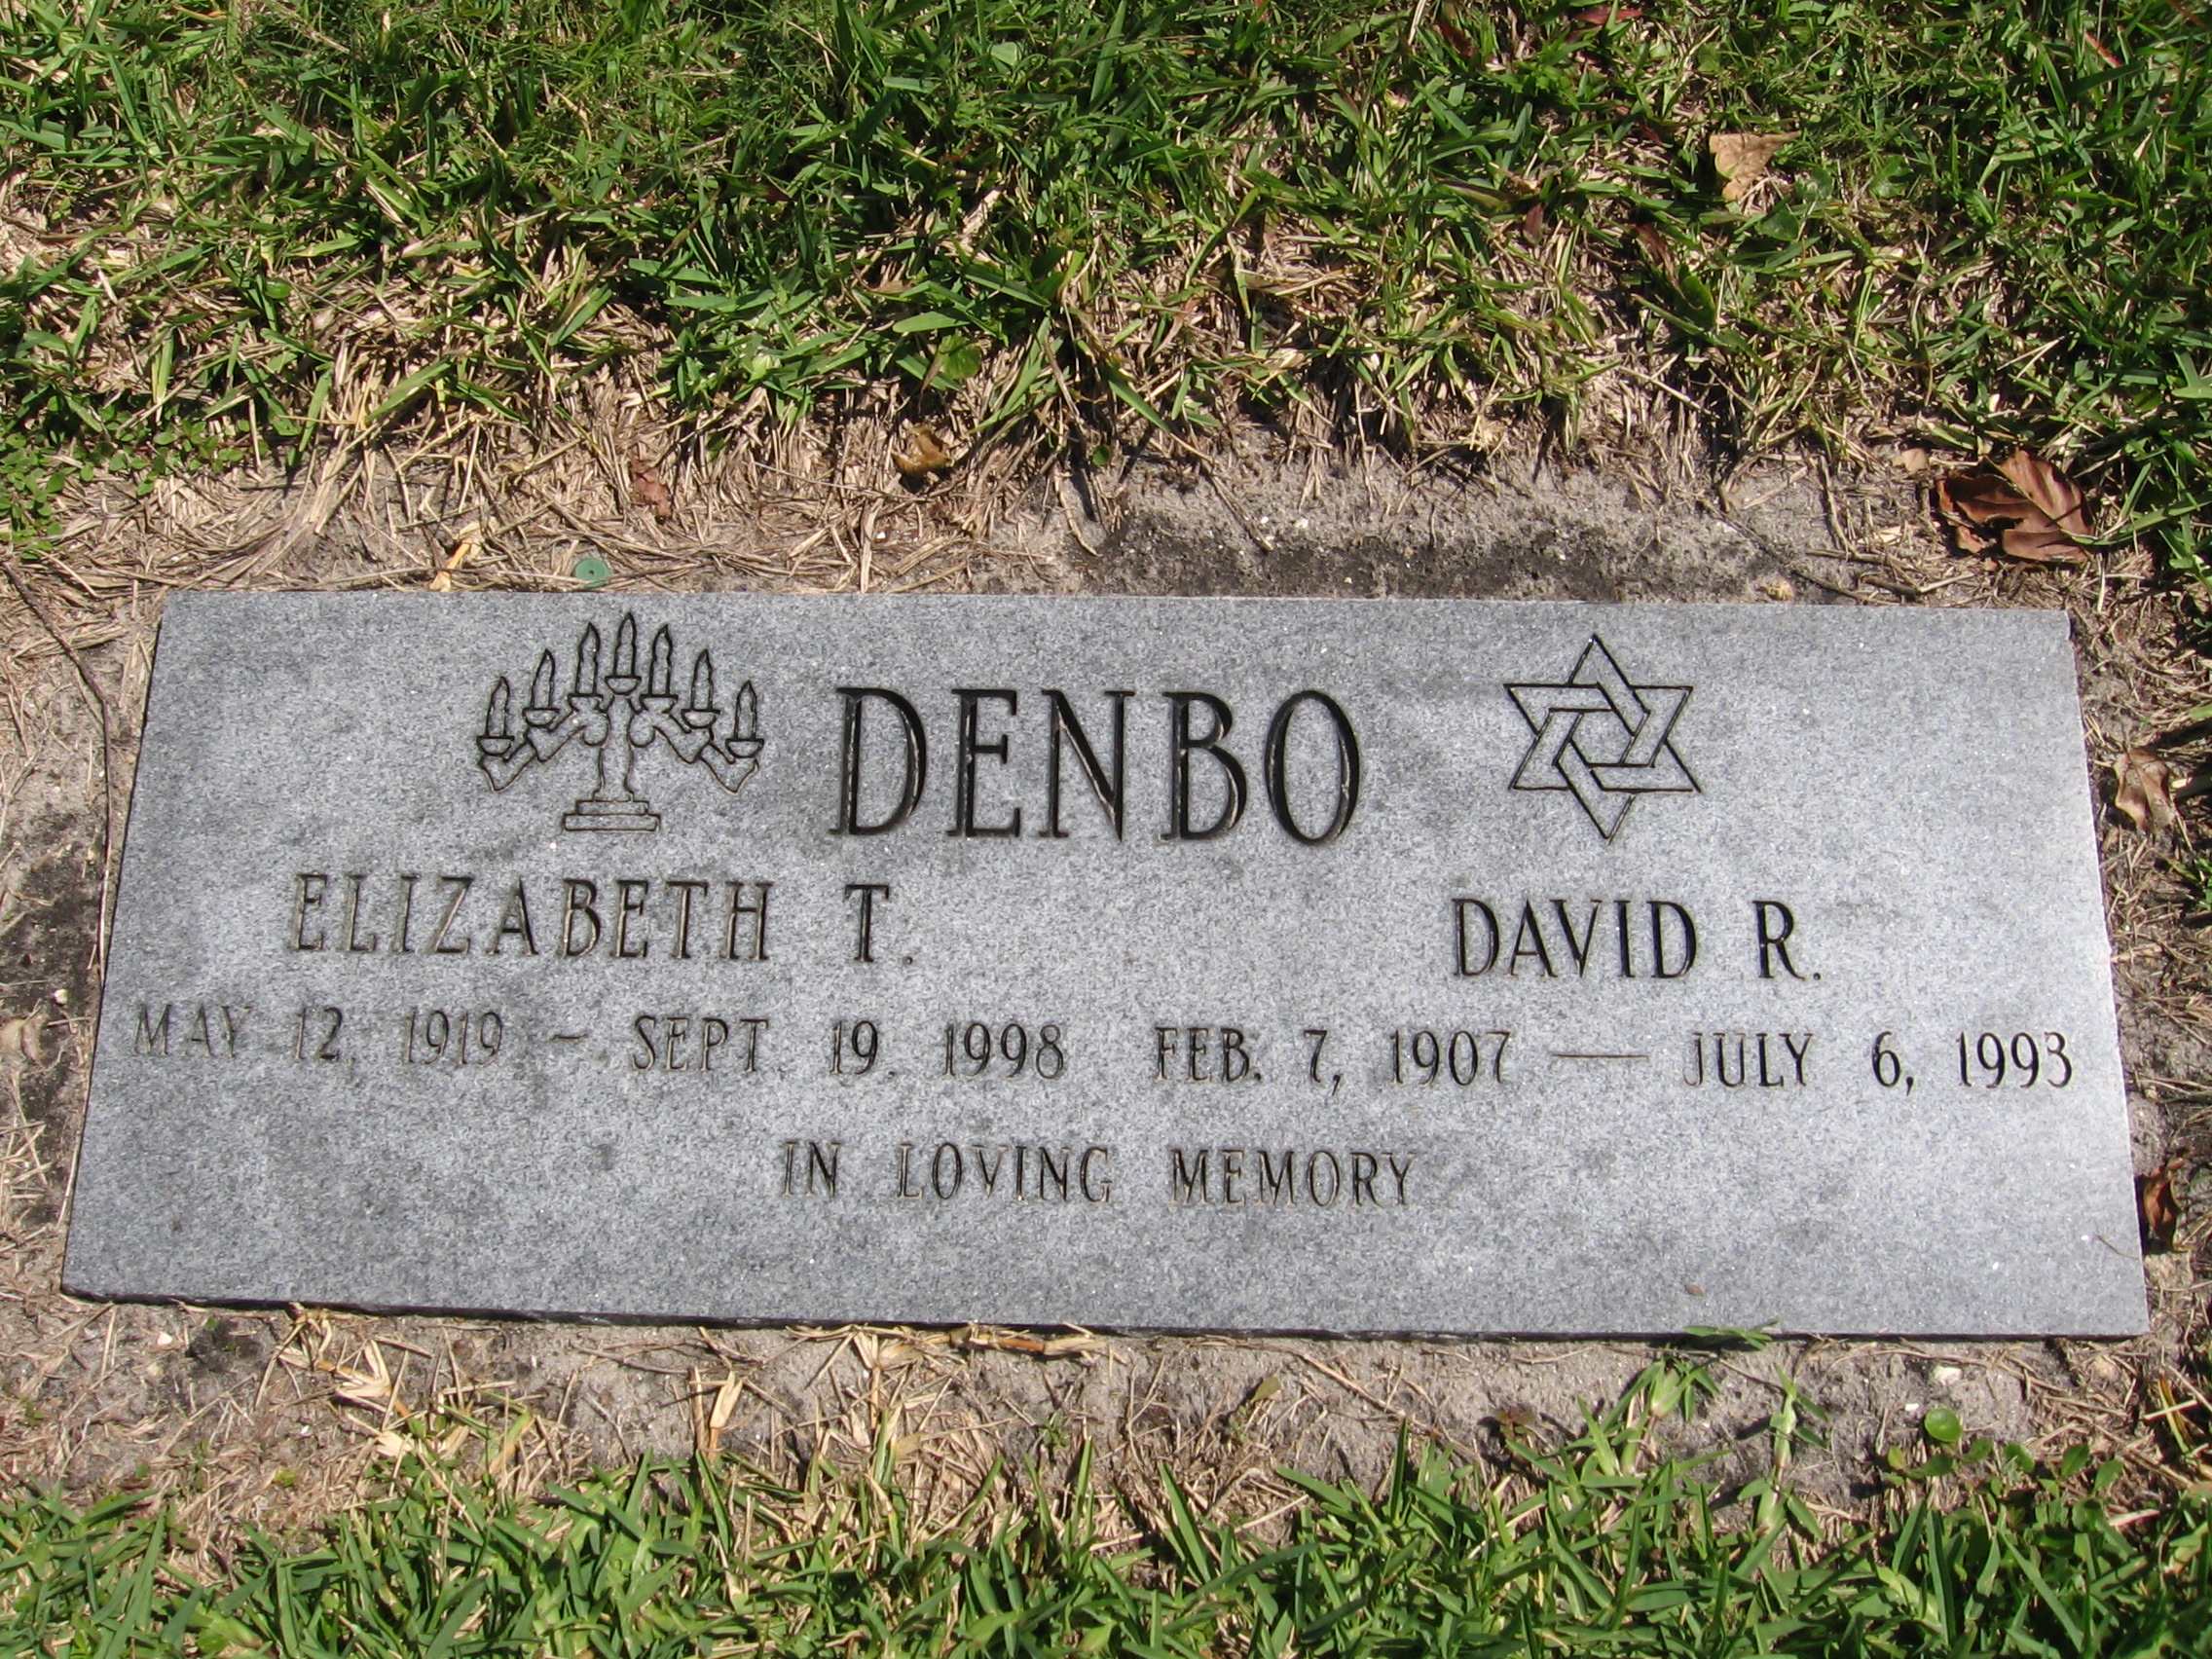 David R Denbo